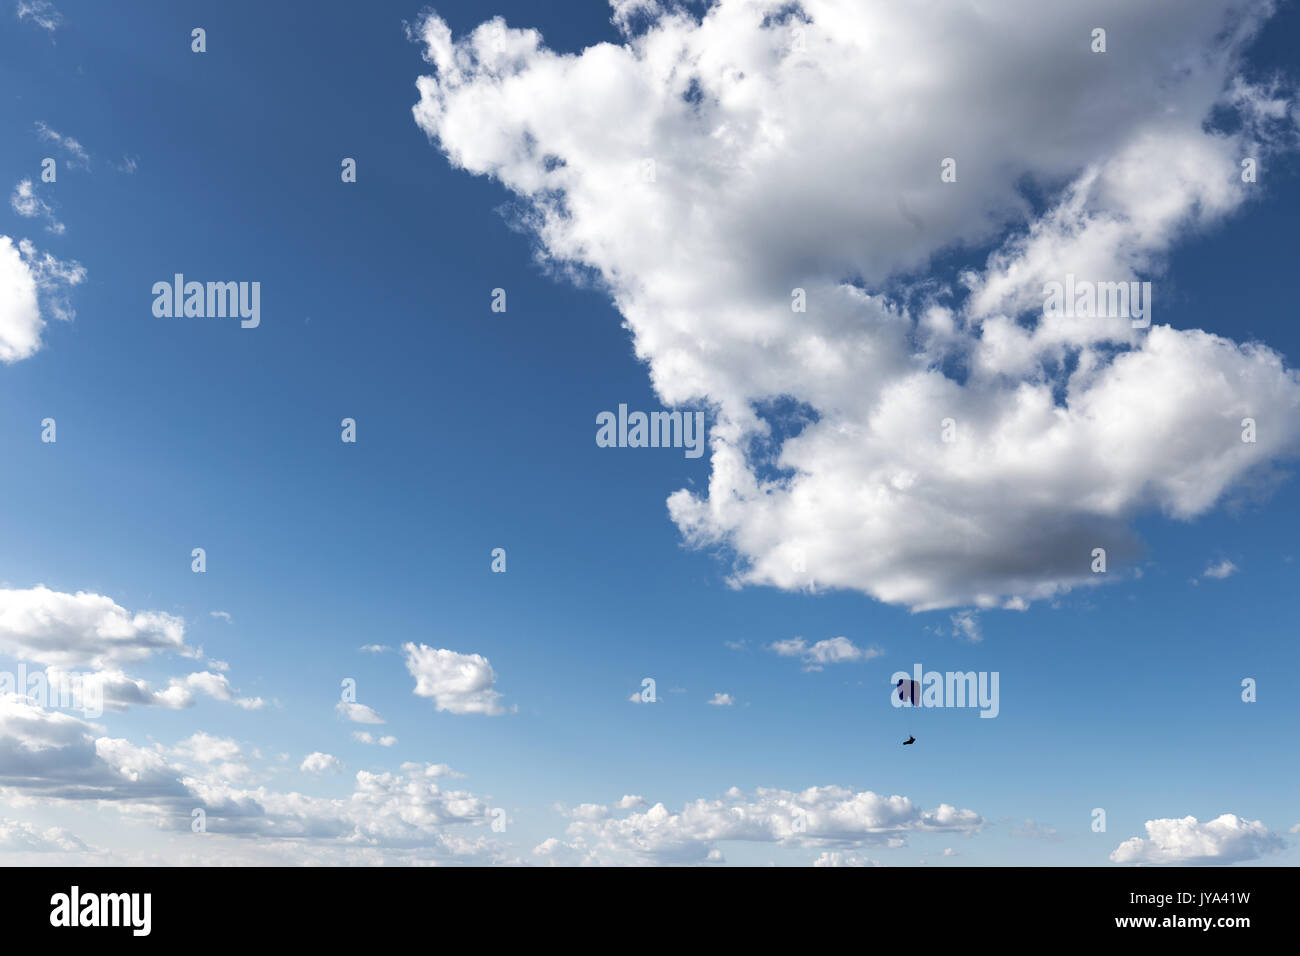 Ein Gleitschirm gegen einen tiefen, blauen Himmel fliegen, mit großen weißen Wolken Stockfoto